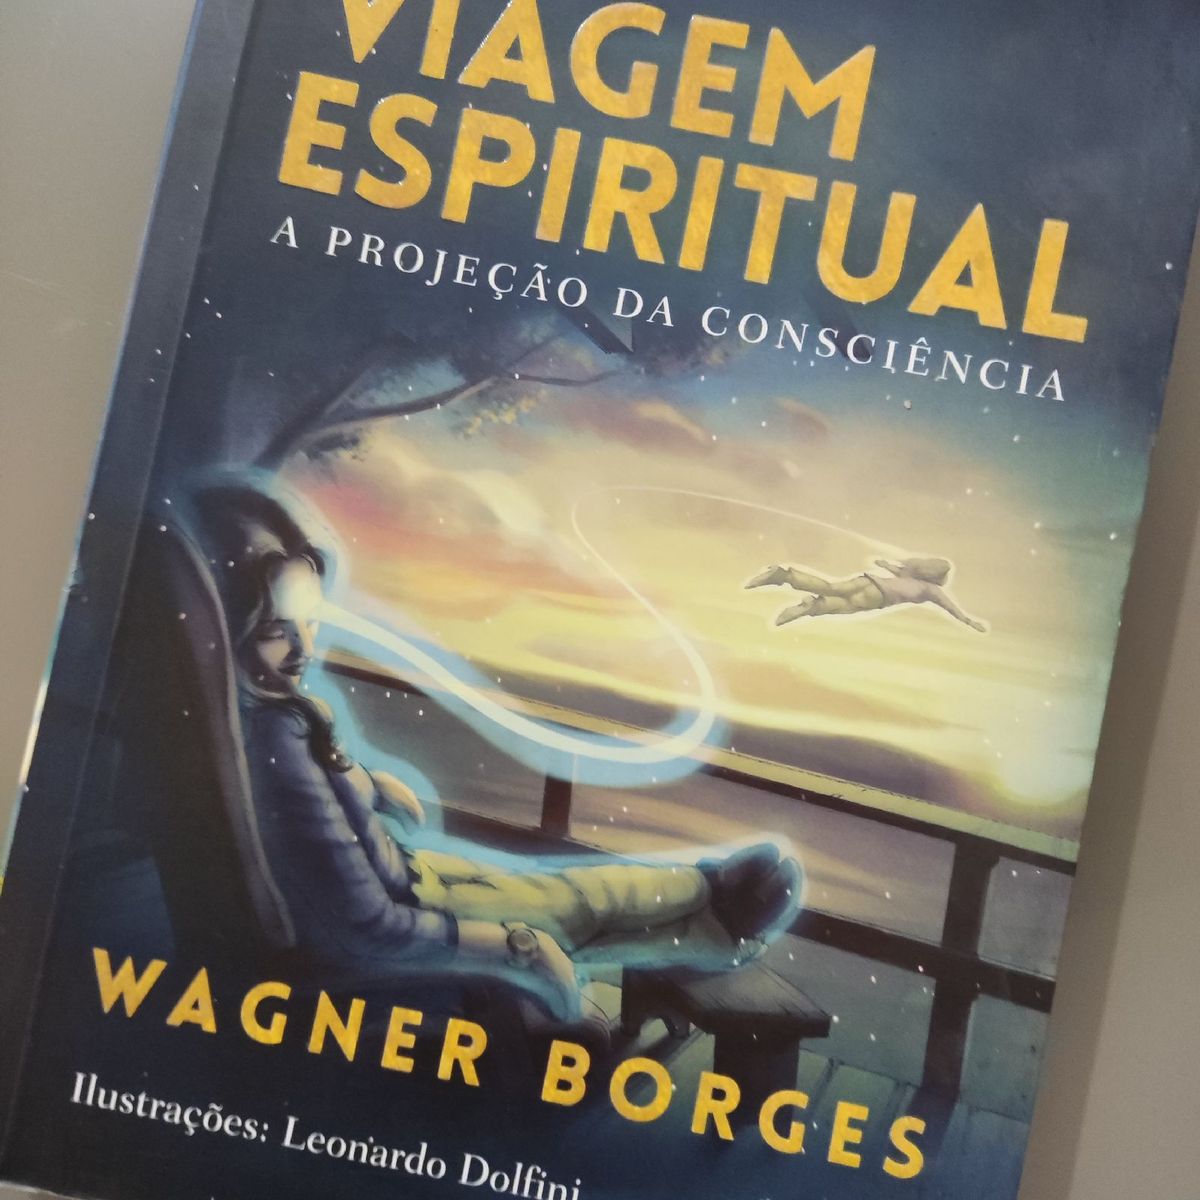 Sapiranguense lança livro para inspirar pessoas na busca pela  espiritualidade – Jornal Repercussão